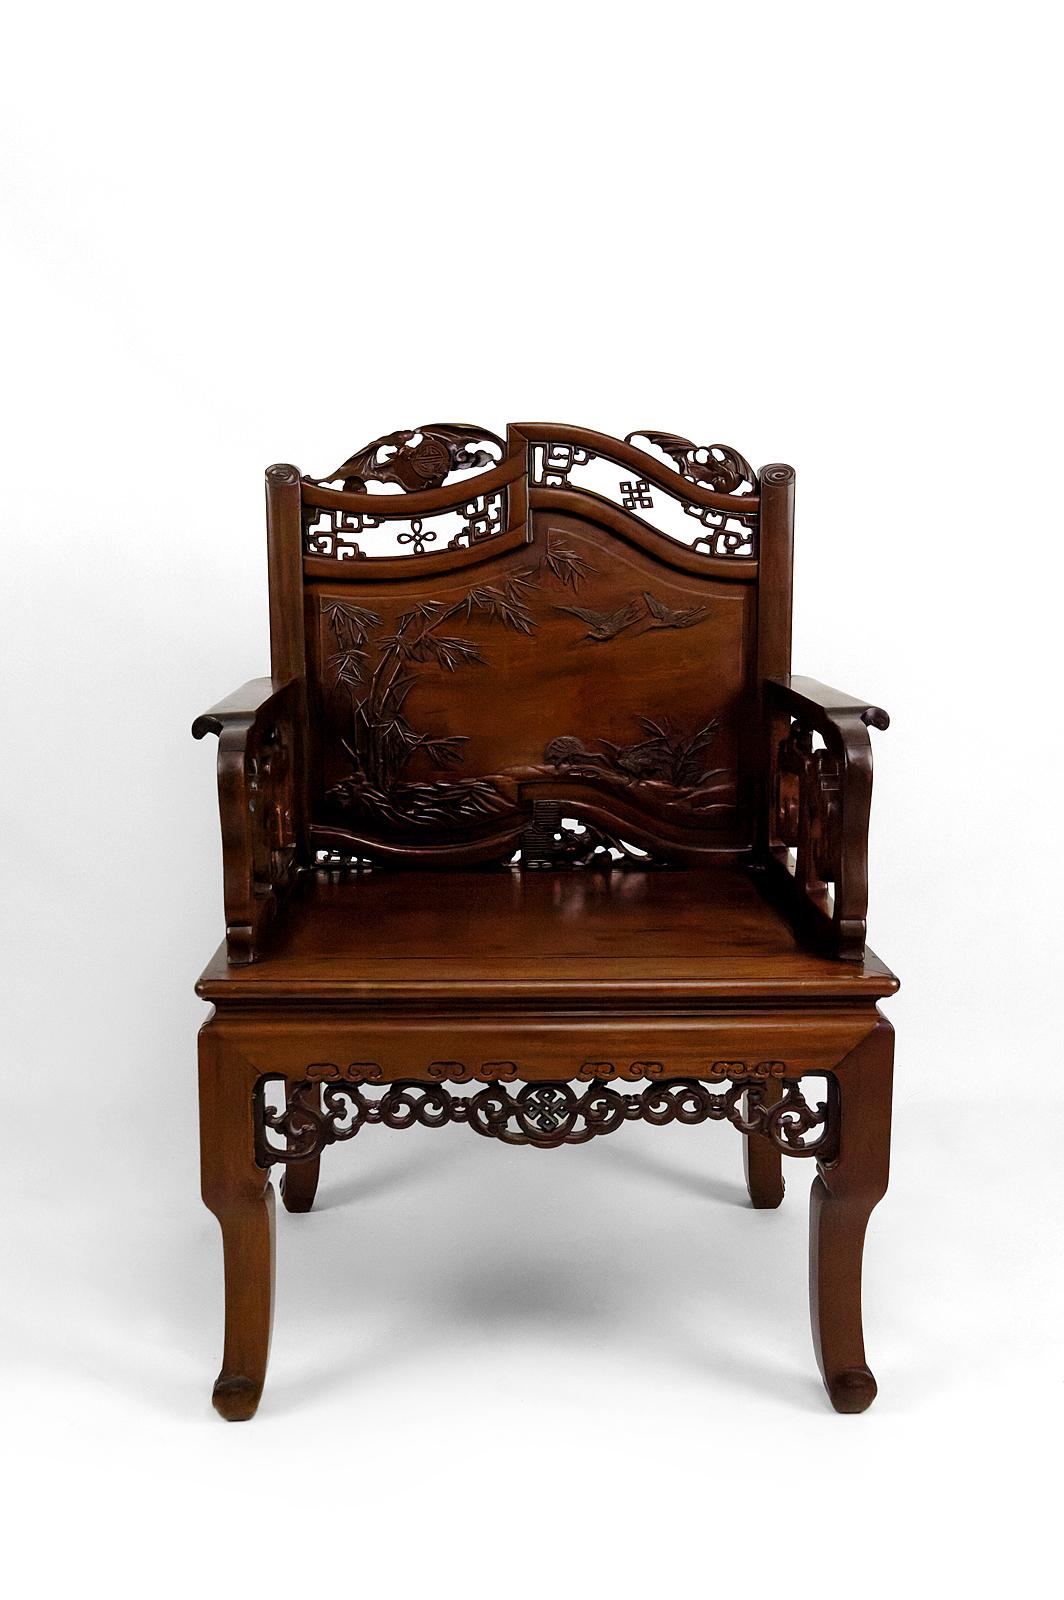 Superbe ensemble de 4 importants fauteuils asiatiques en bois d'acajou chinois sculpté (toona sinensis).

Sculptée de motifs végétaux et animaux : 3 chauves-souris sculptées (symboles de bonne fortune, de bonheur et de longévité), au centre de